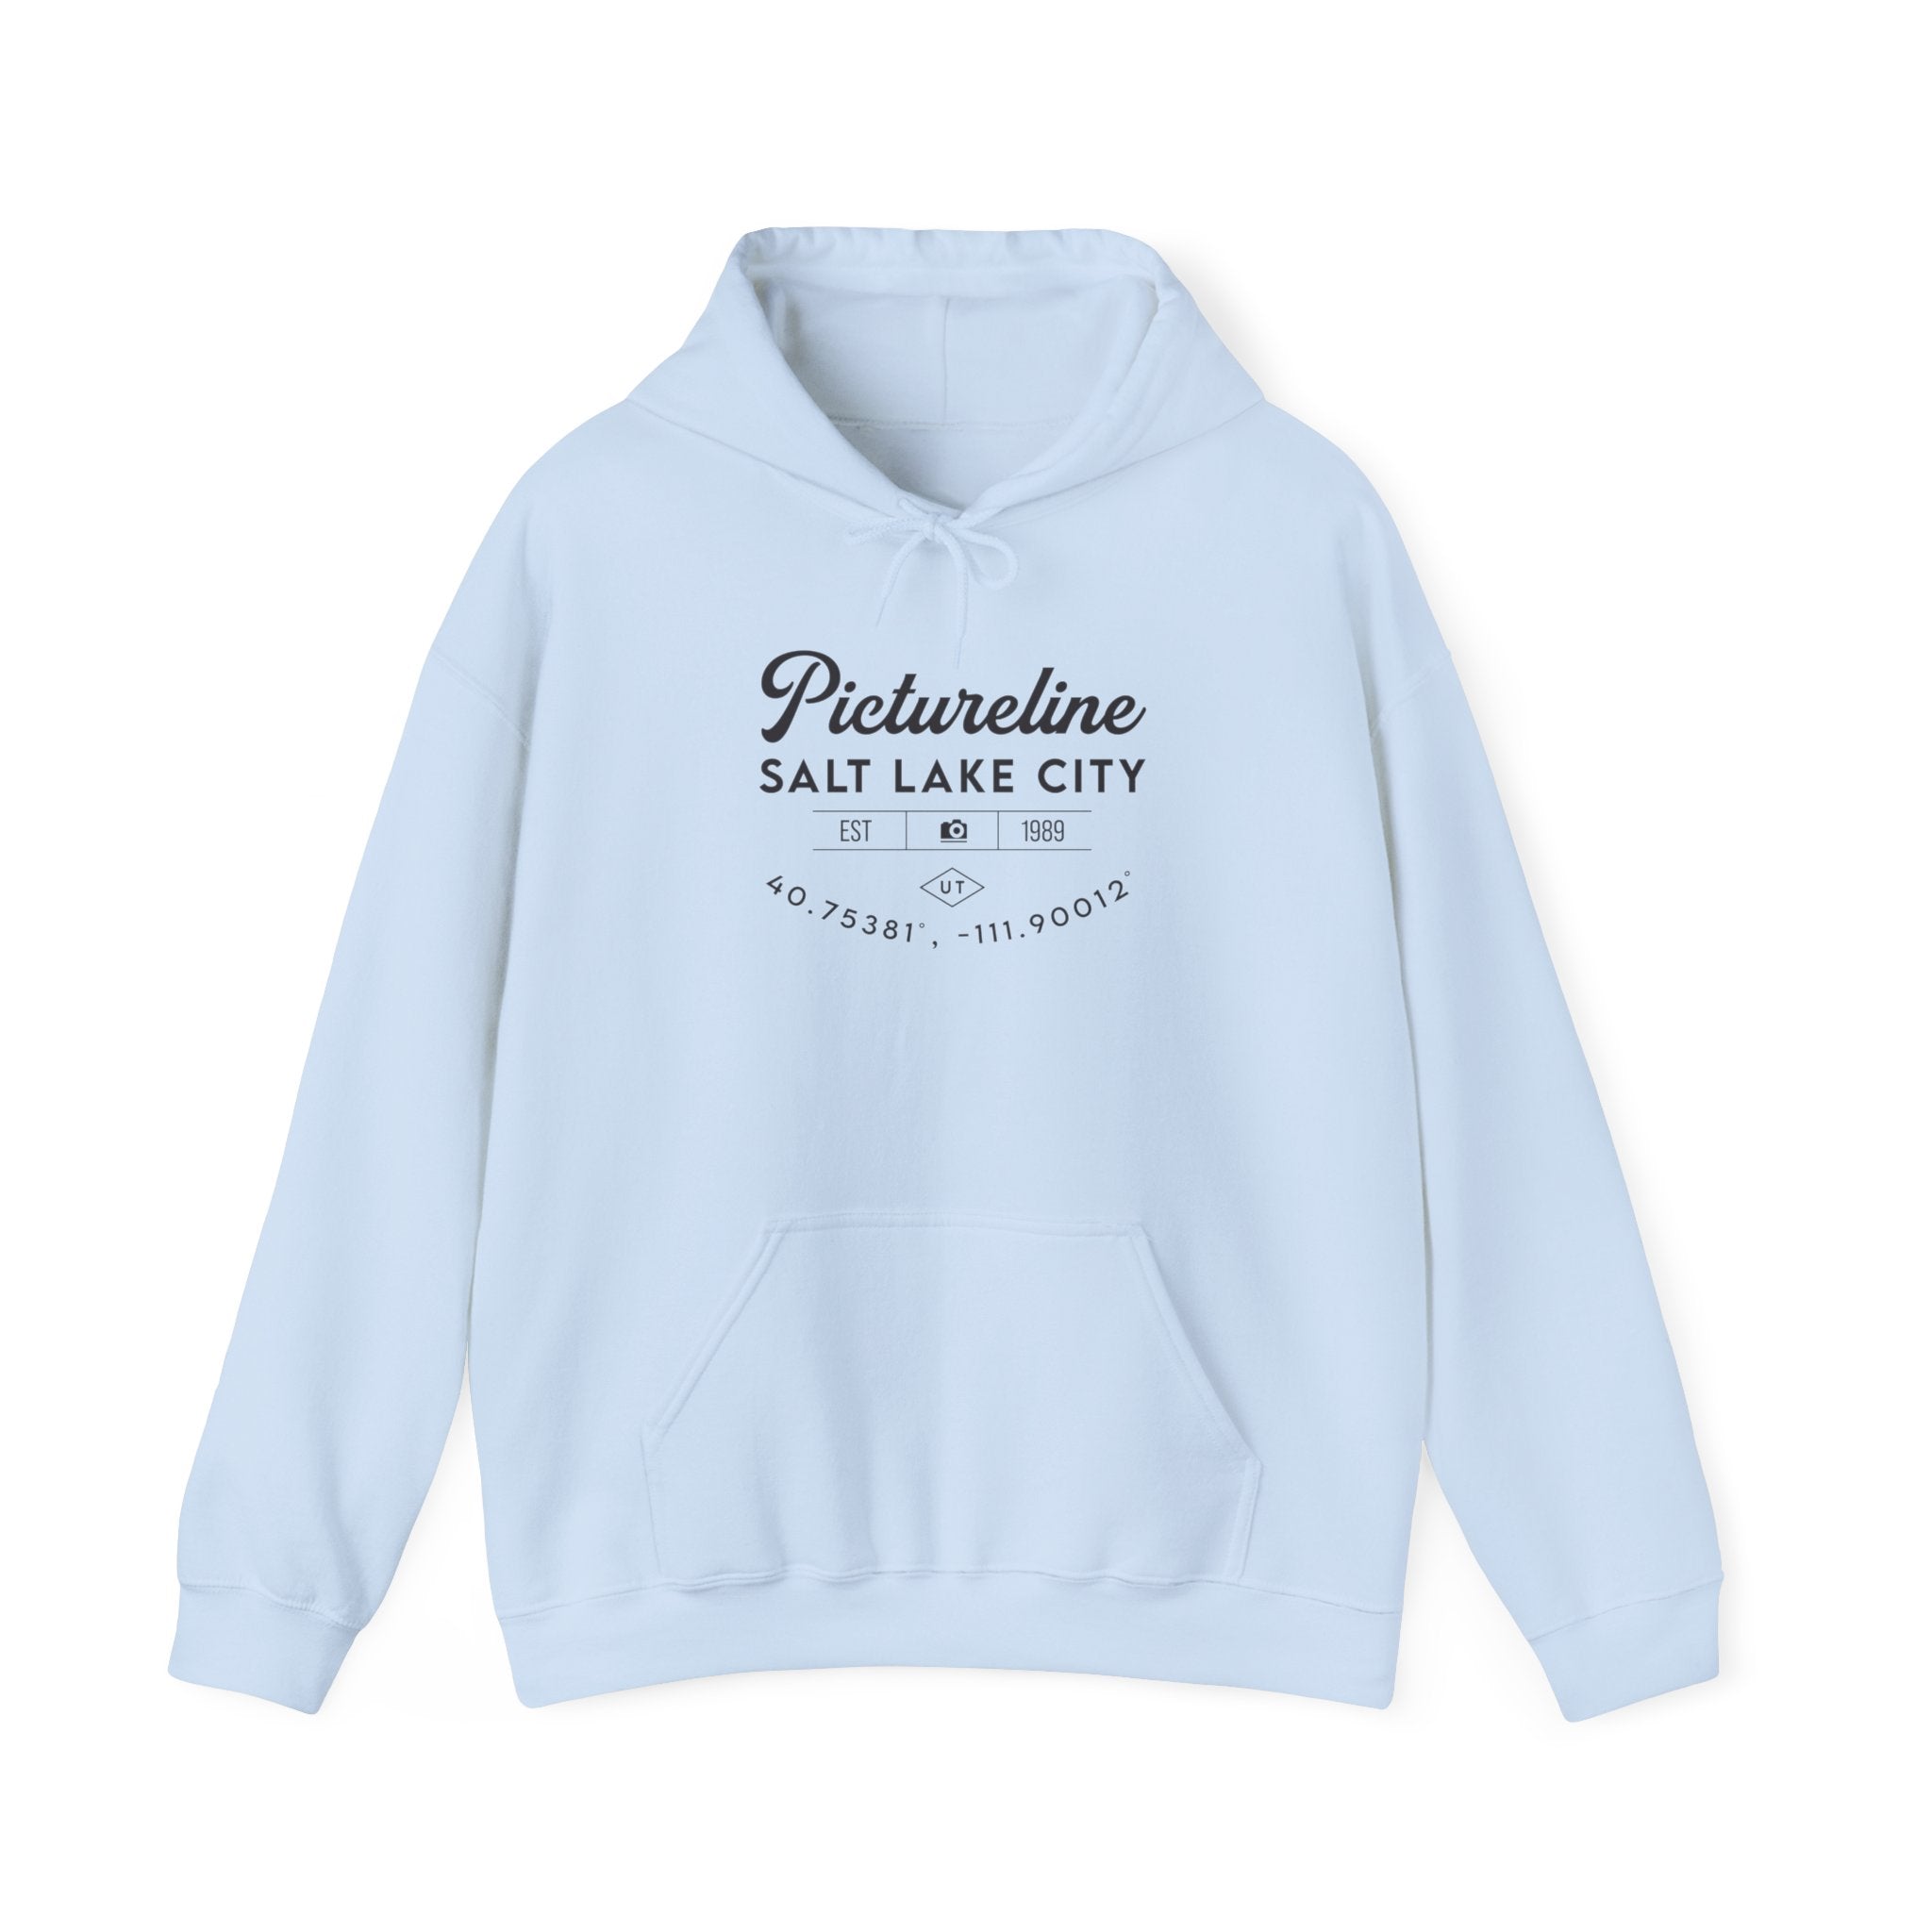 Old School Pictureline Unisex Hooded Sweatshirt (Front Design)